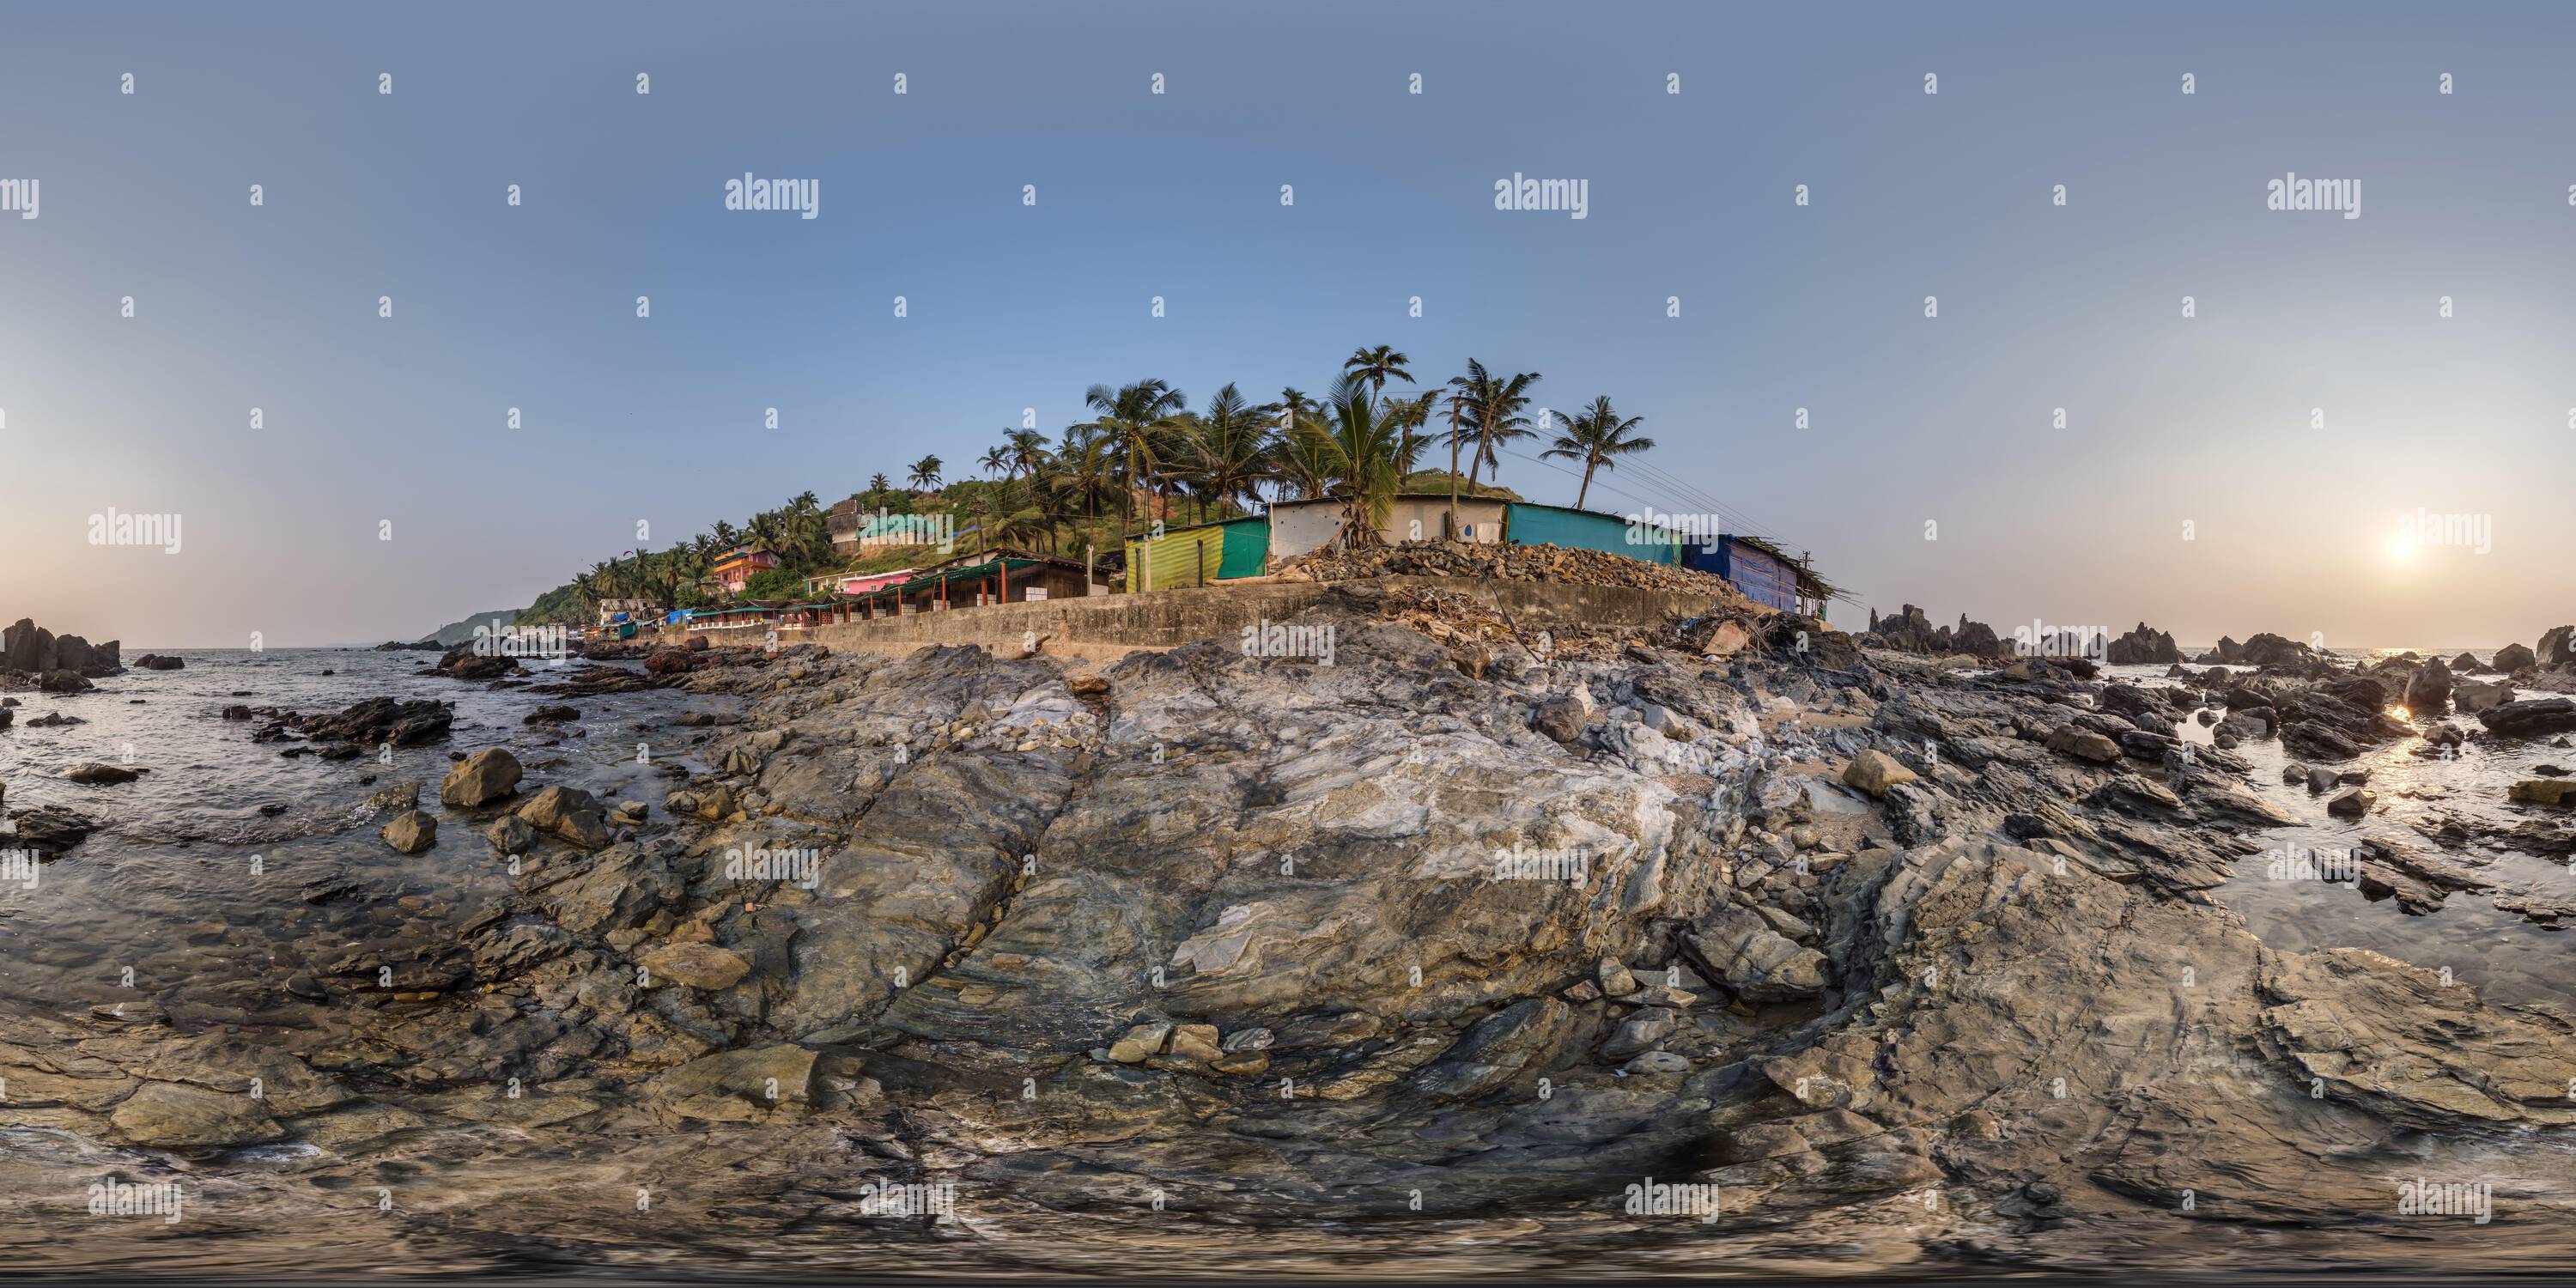 Vue panoramique à 360° de plein hdri 360 vue panoramique sur l'océan sur le rivage avec des rochers en projection équirectangulaire avec zénith et nadir. Contenu VR AR,